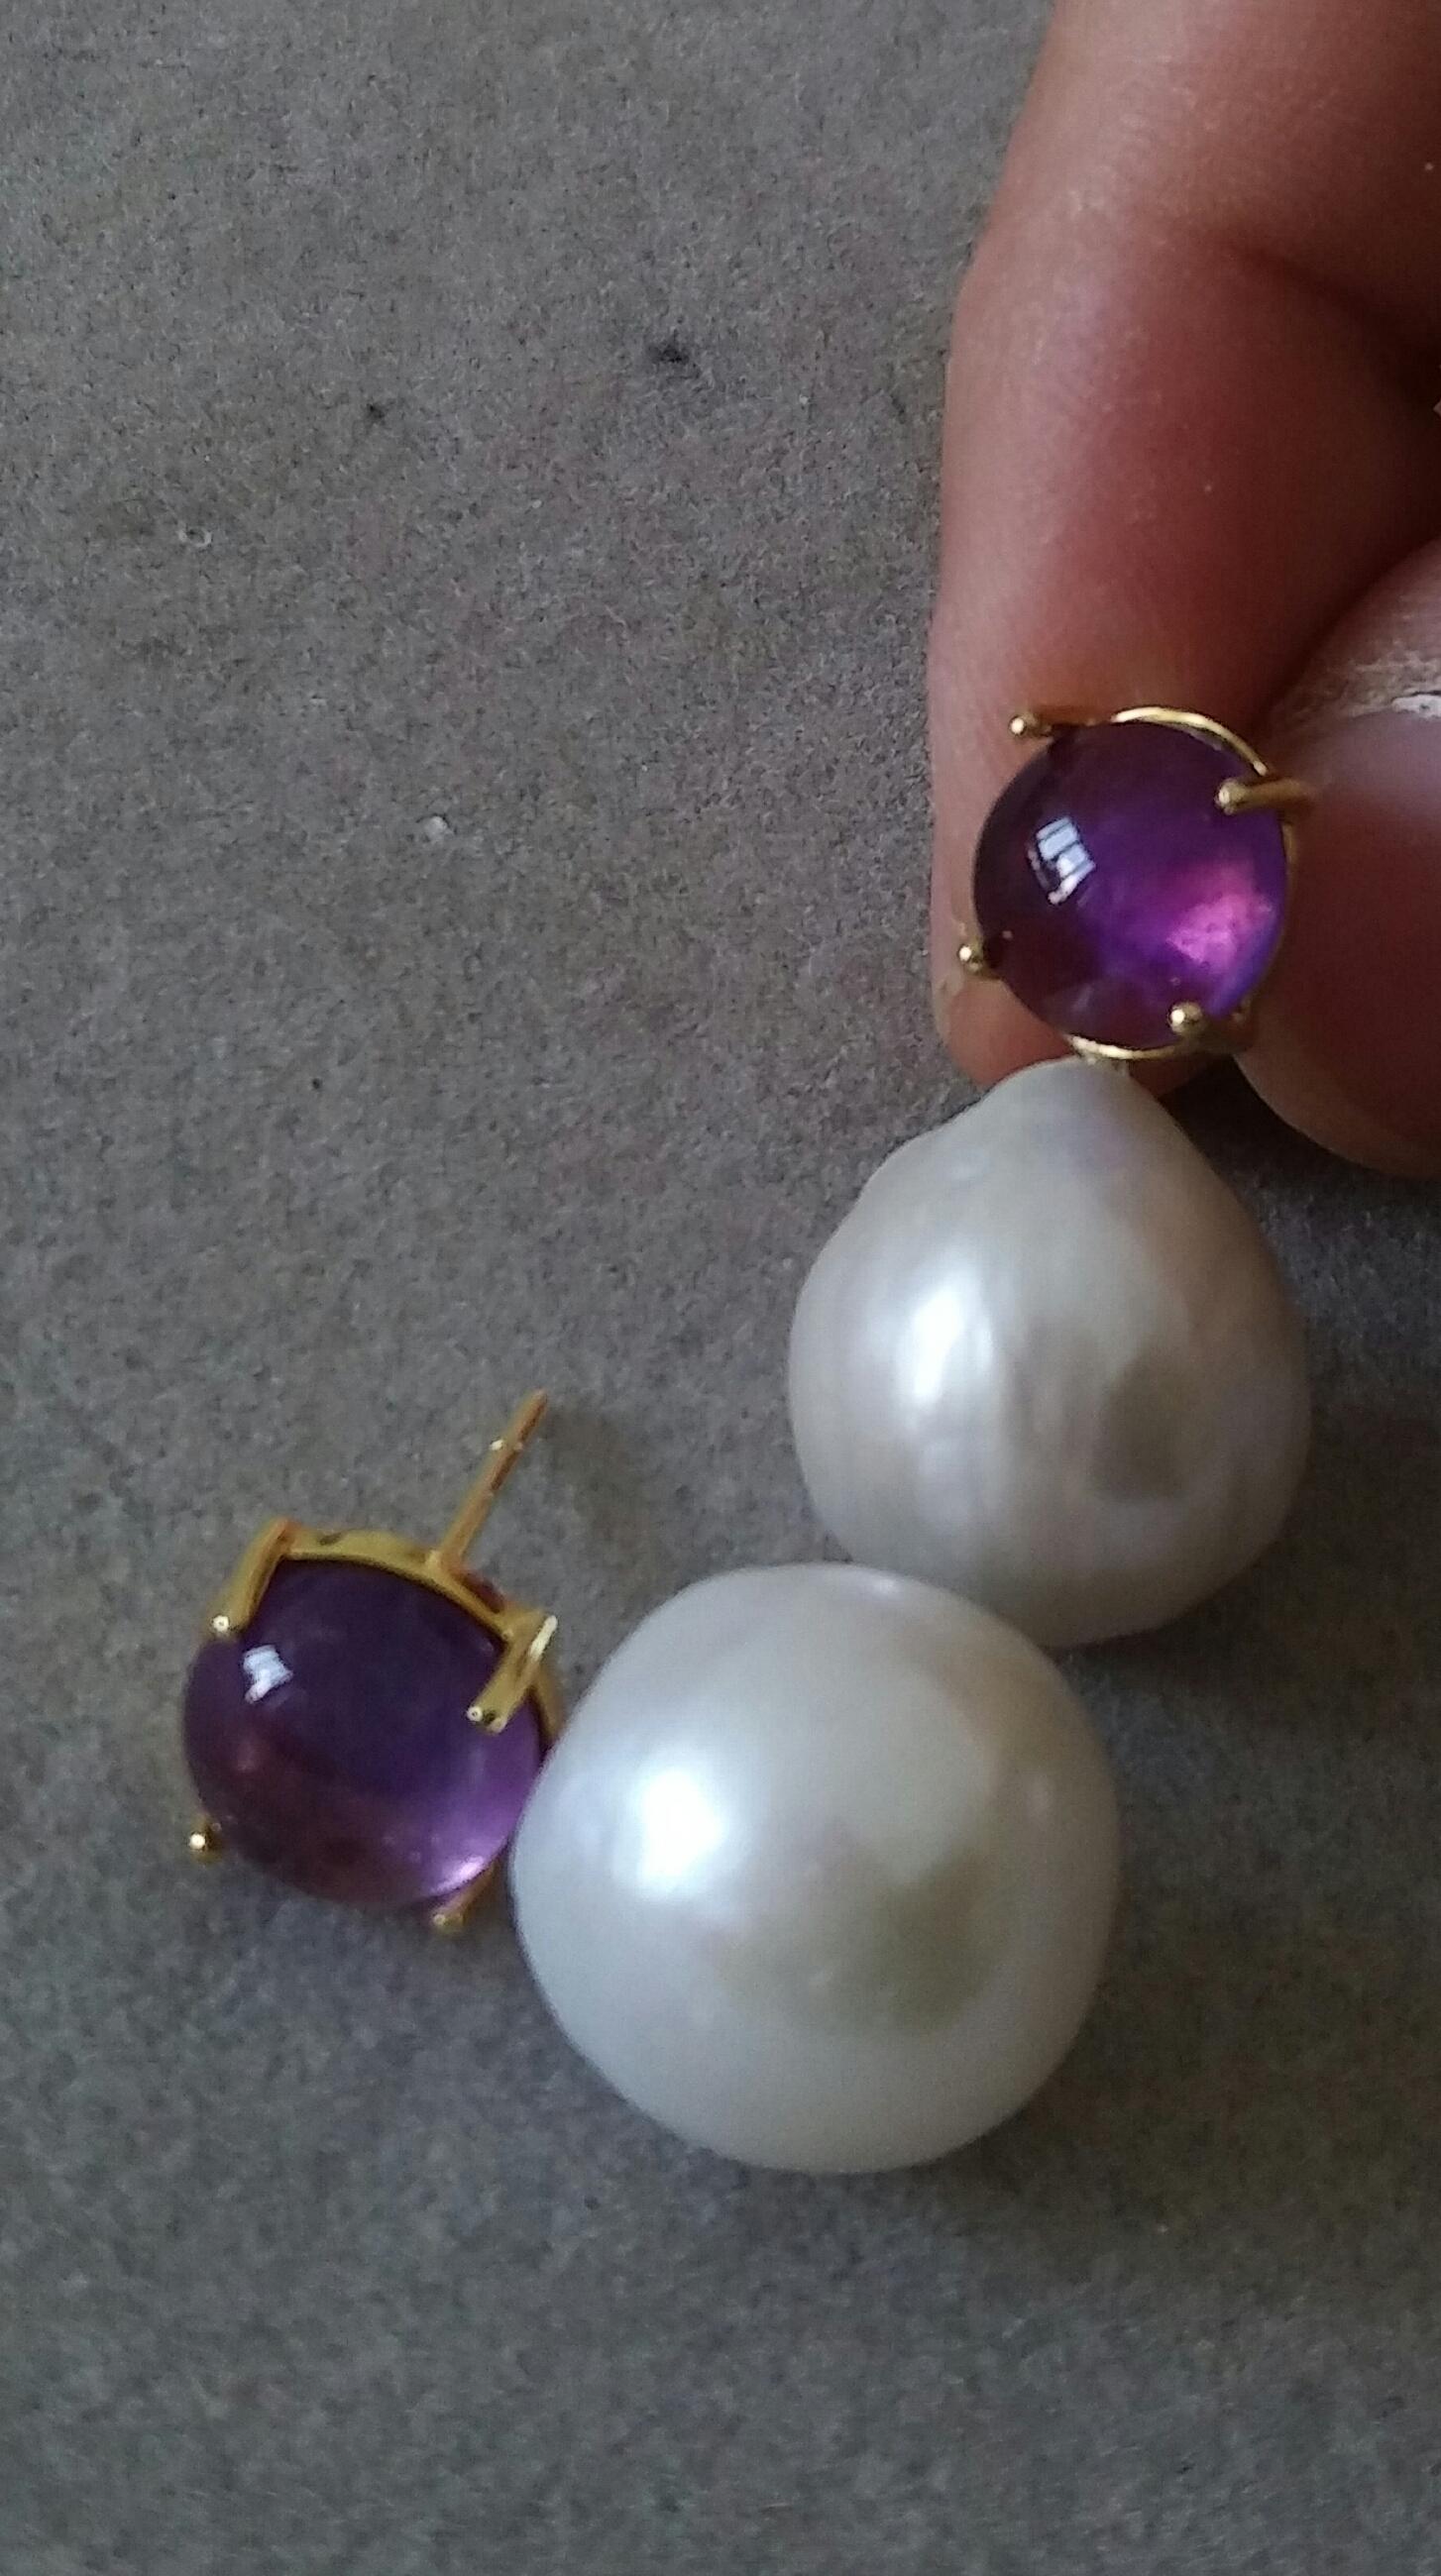 baroque pearls earrings